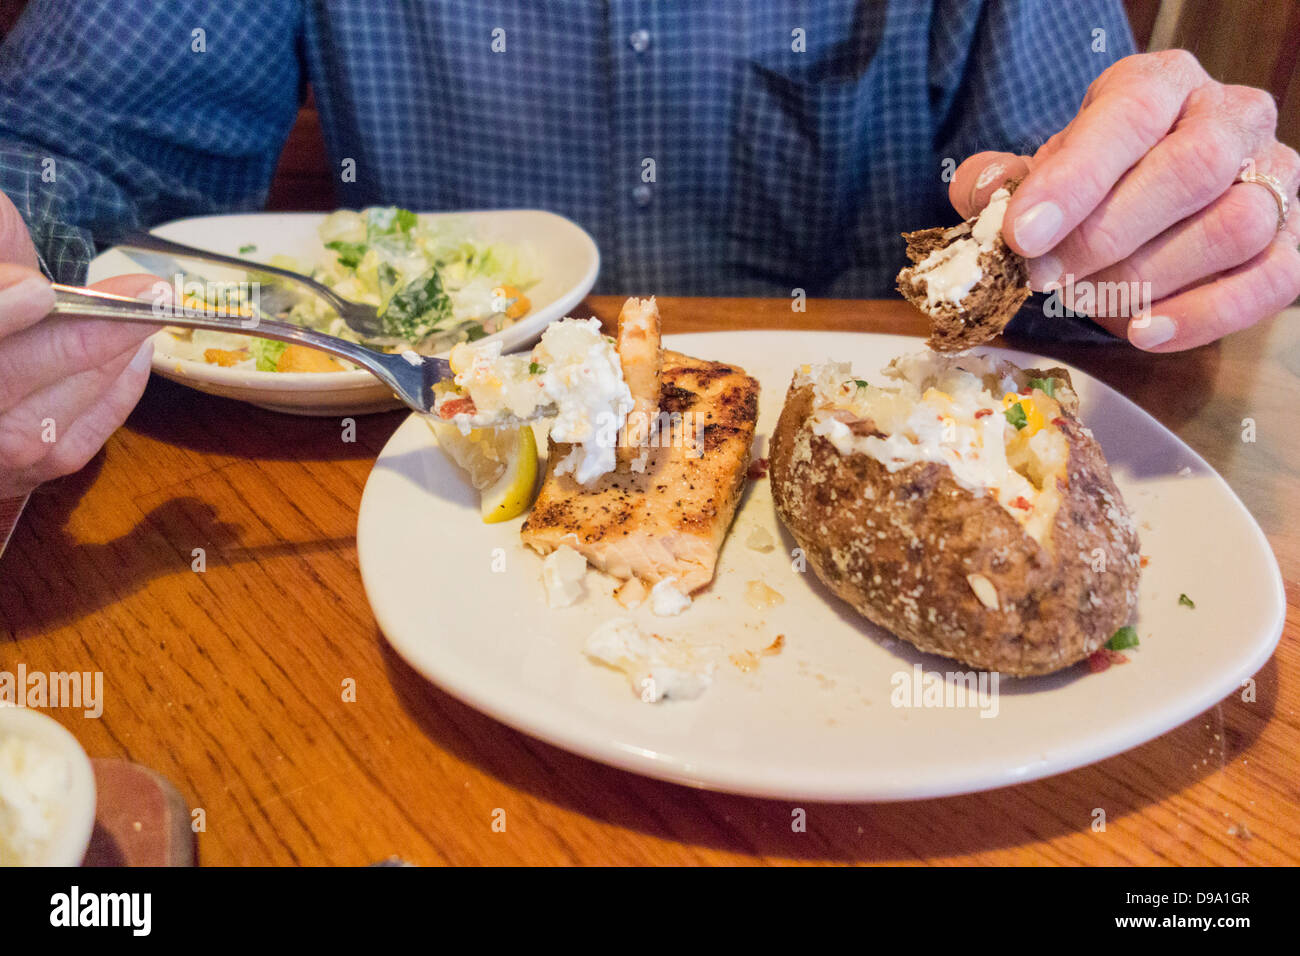 Un uomo anziano, il petto e le mani solo, mangia un pasto a base di salmone alla griglia, patate al forno, insalata e pane presso un ristorante. Stati Uniti d'America Foto Stock